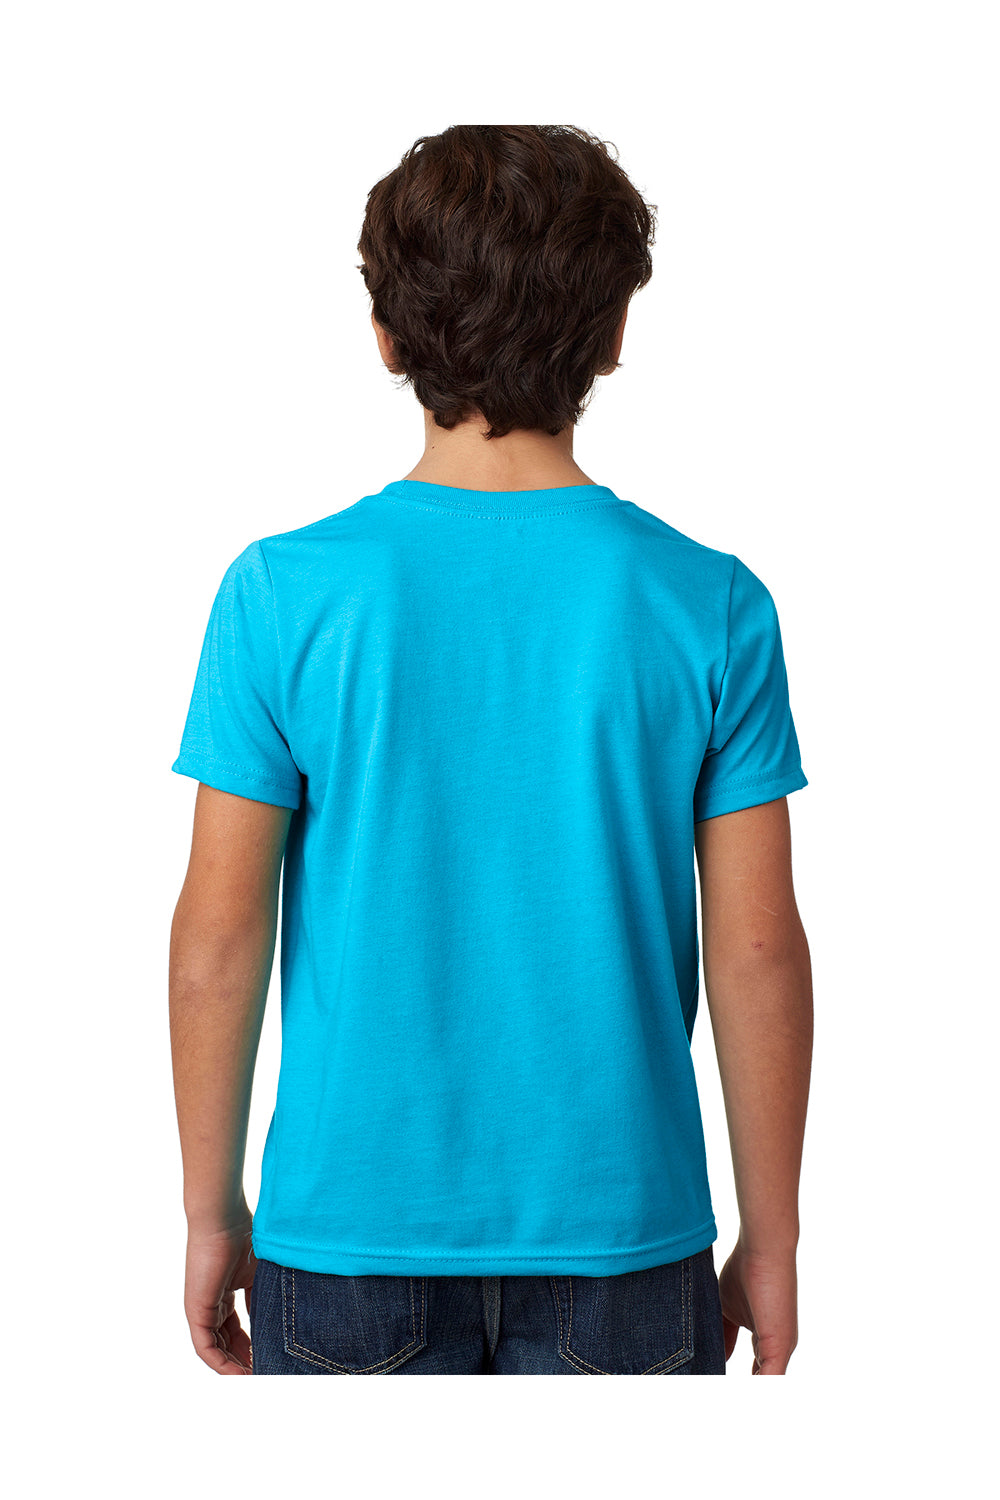 Next Level 3312 Youth CVC Jersey Short Sleeve Crewneck T-Shirt Turquoise Blue Back